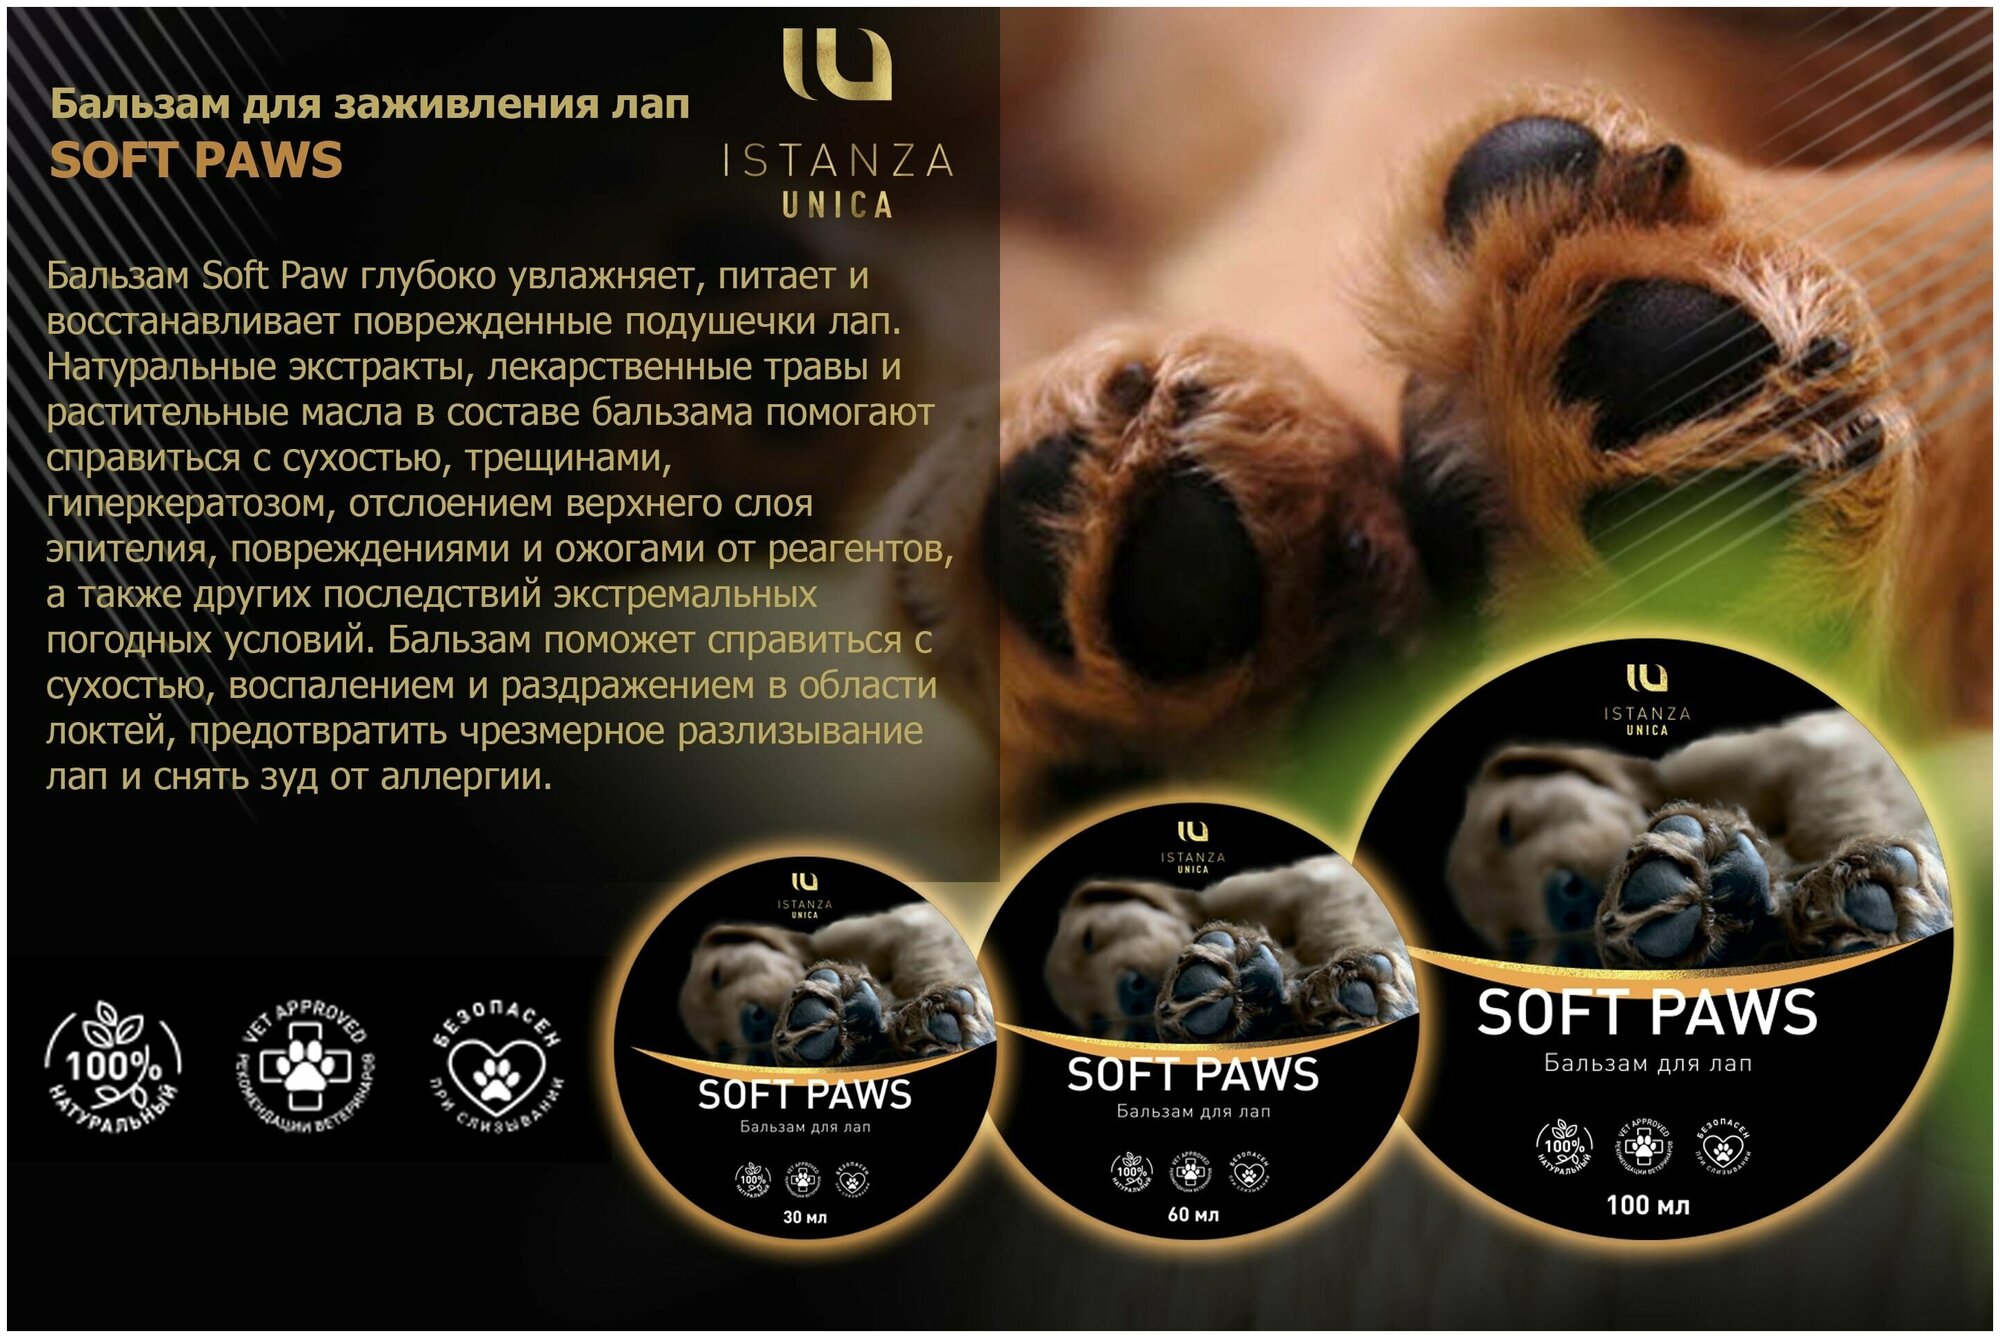 SOFT PAWS - Бальзам для лечения подушечек лап собак Натуральный состав Эффективен при сухости, трещинах и гиперкератозе. Объем 30мл - фотография № 2